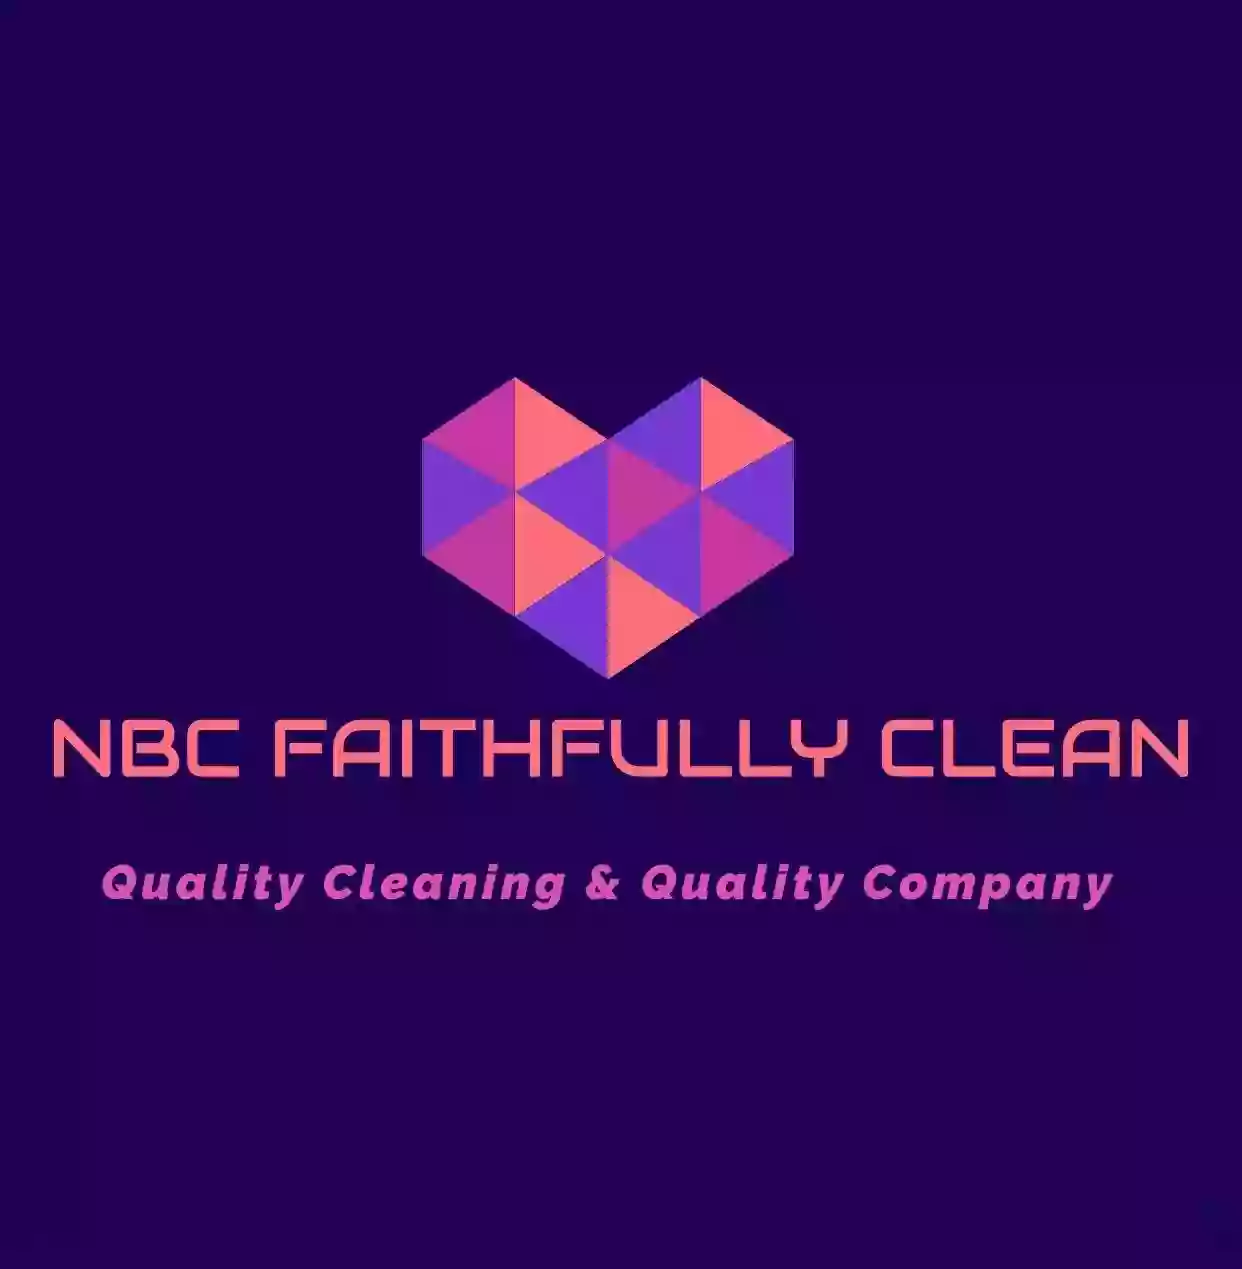 NBC FAITHFULLY CLEAN